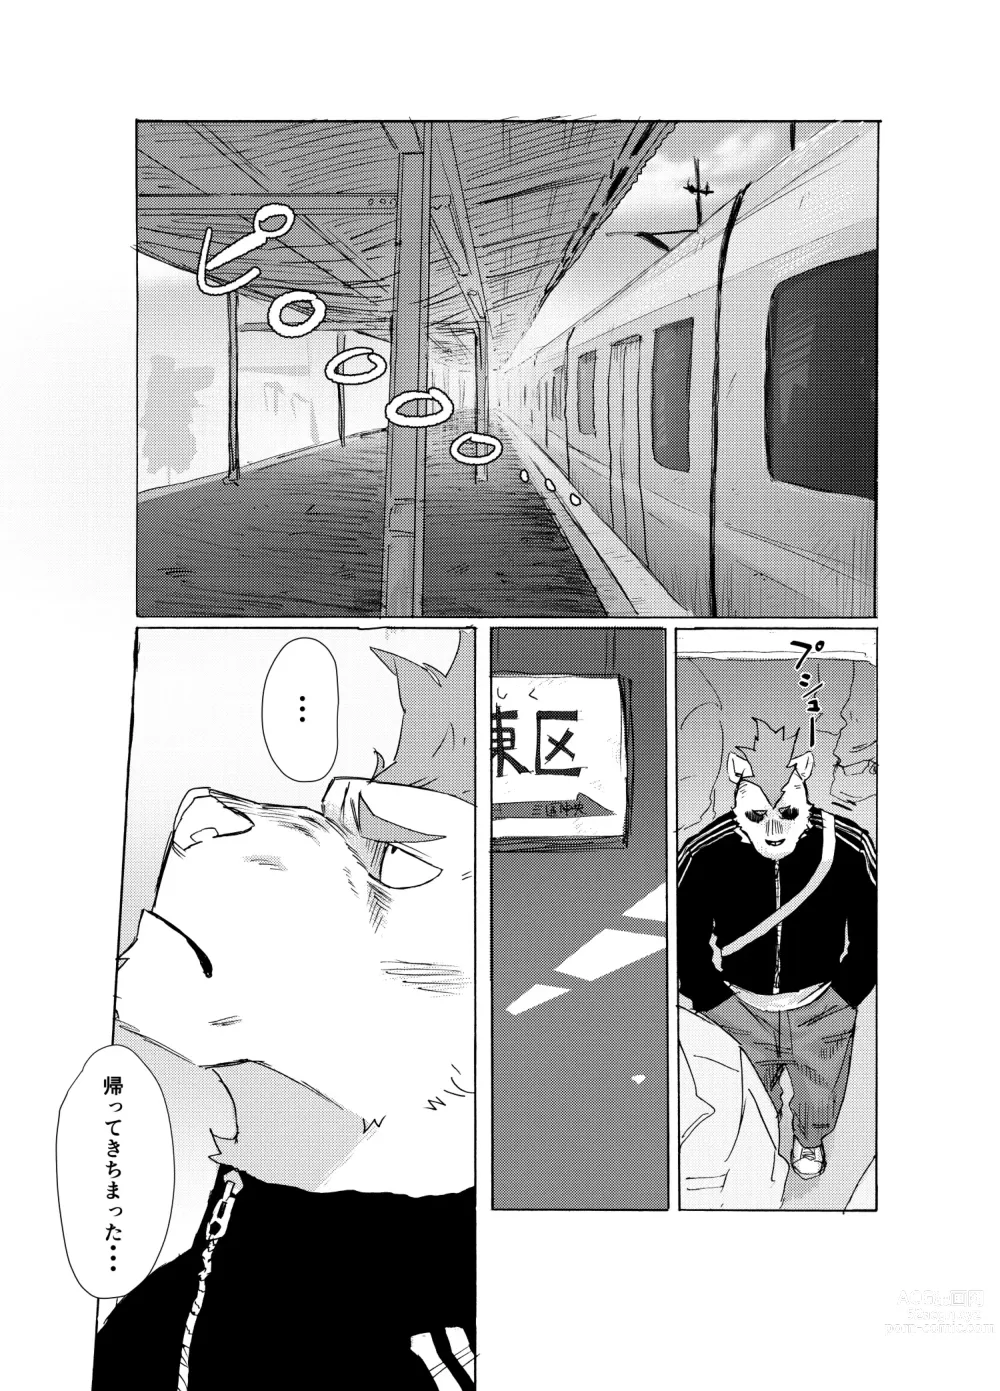 Page 2 of manga BAD Memories